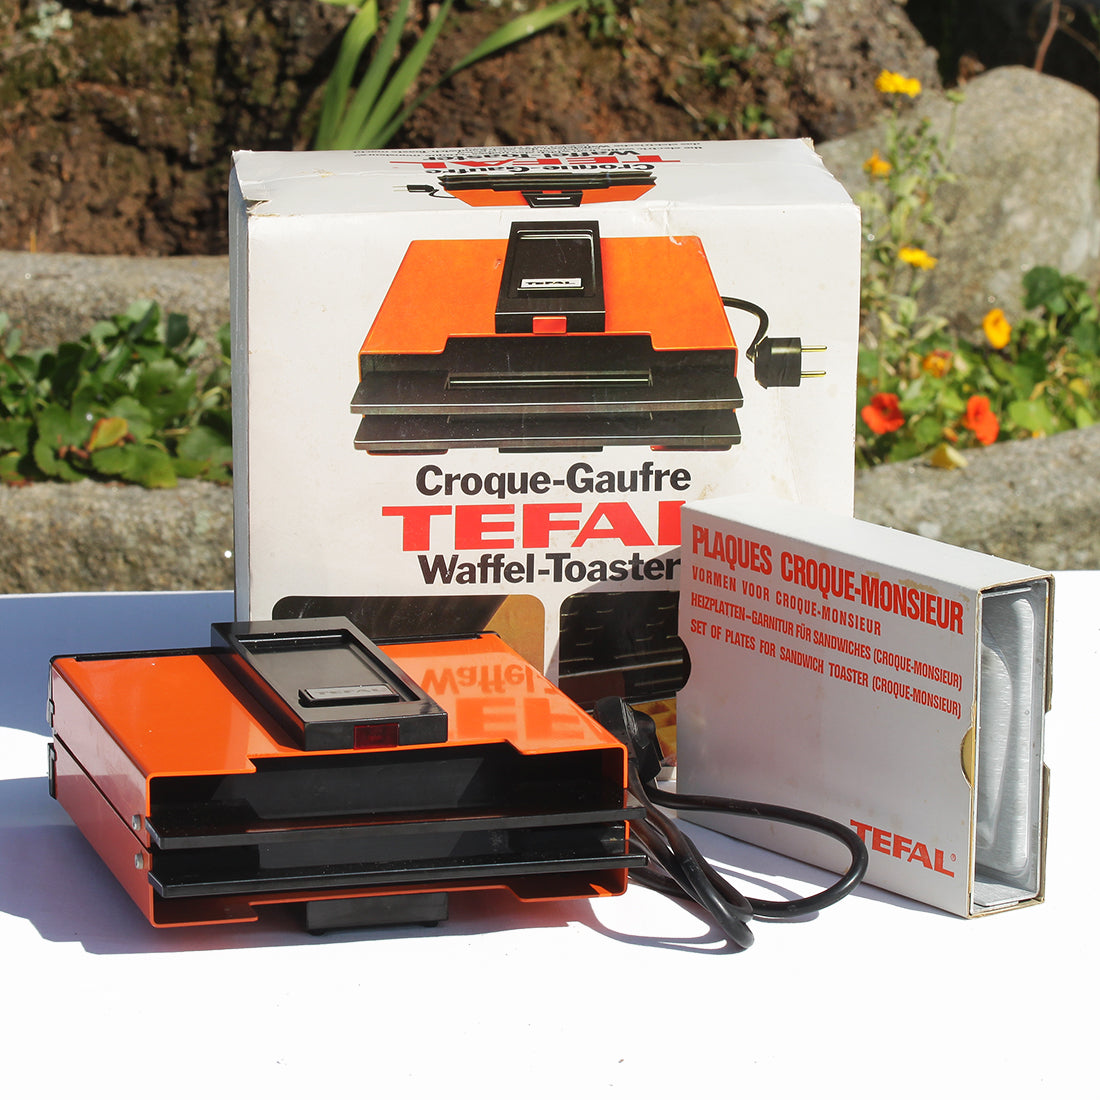 Appareil Tefal vintage Croque-Gaufre électrique orange – La Roue du Passé